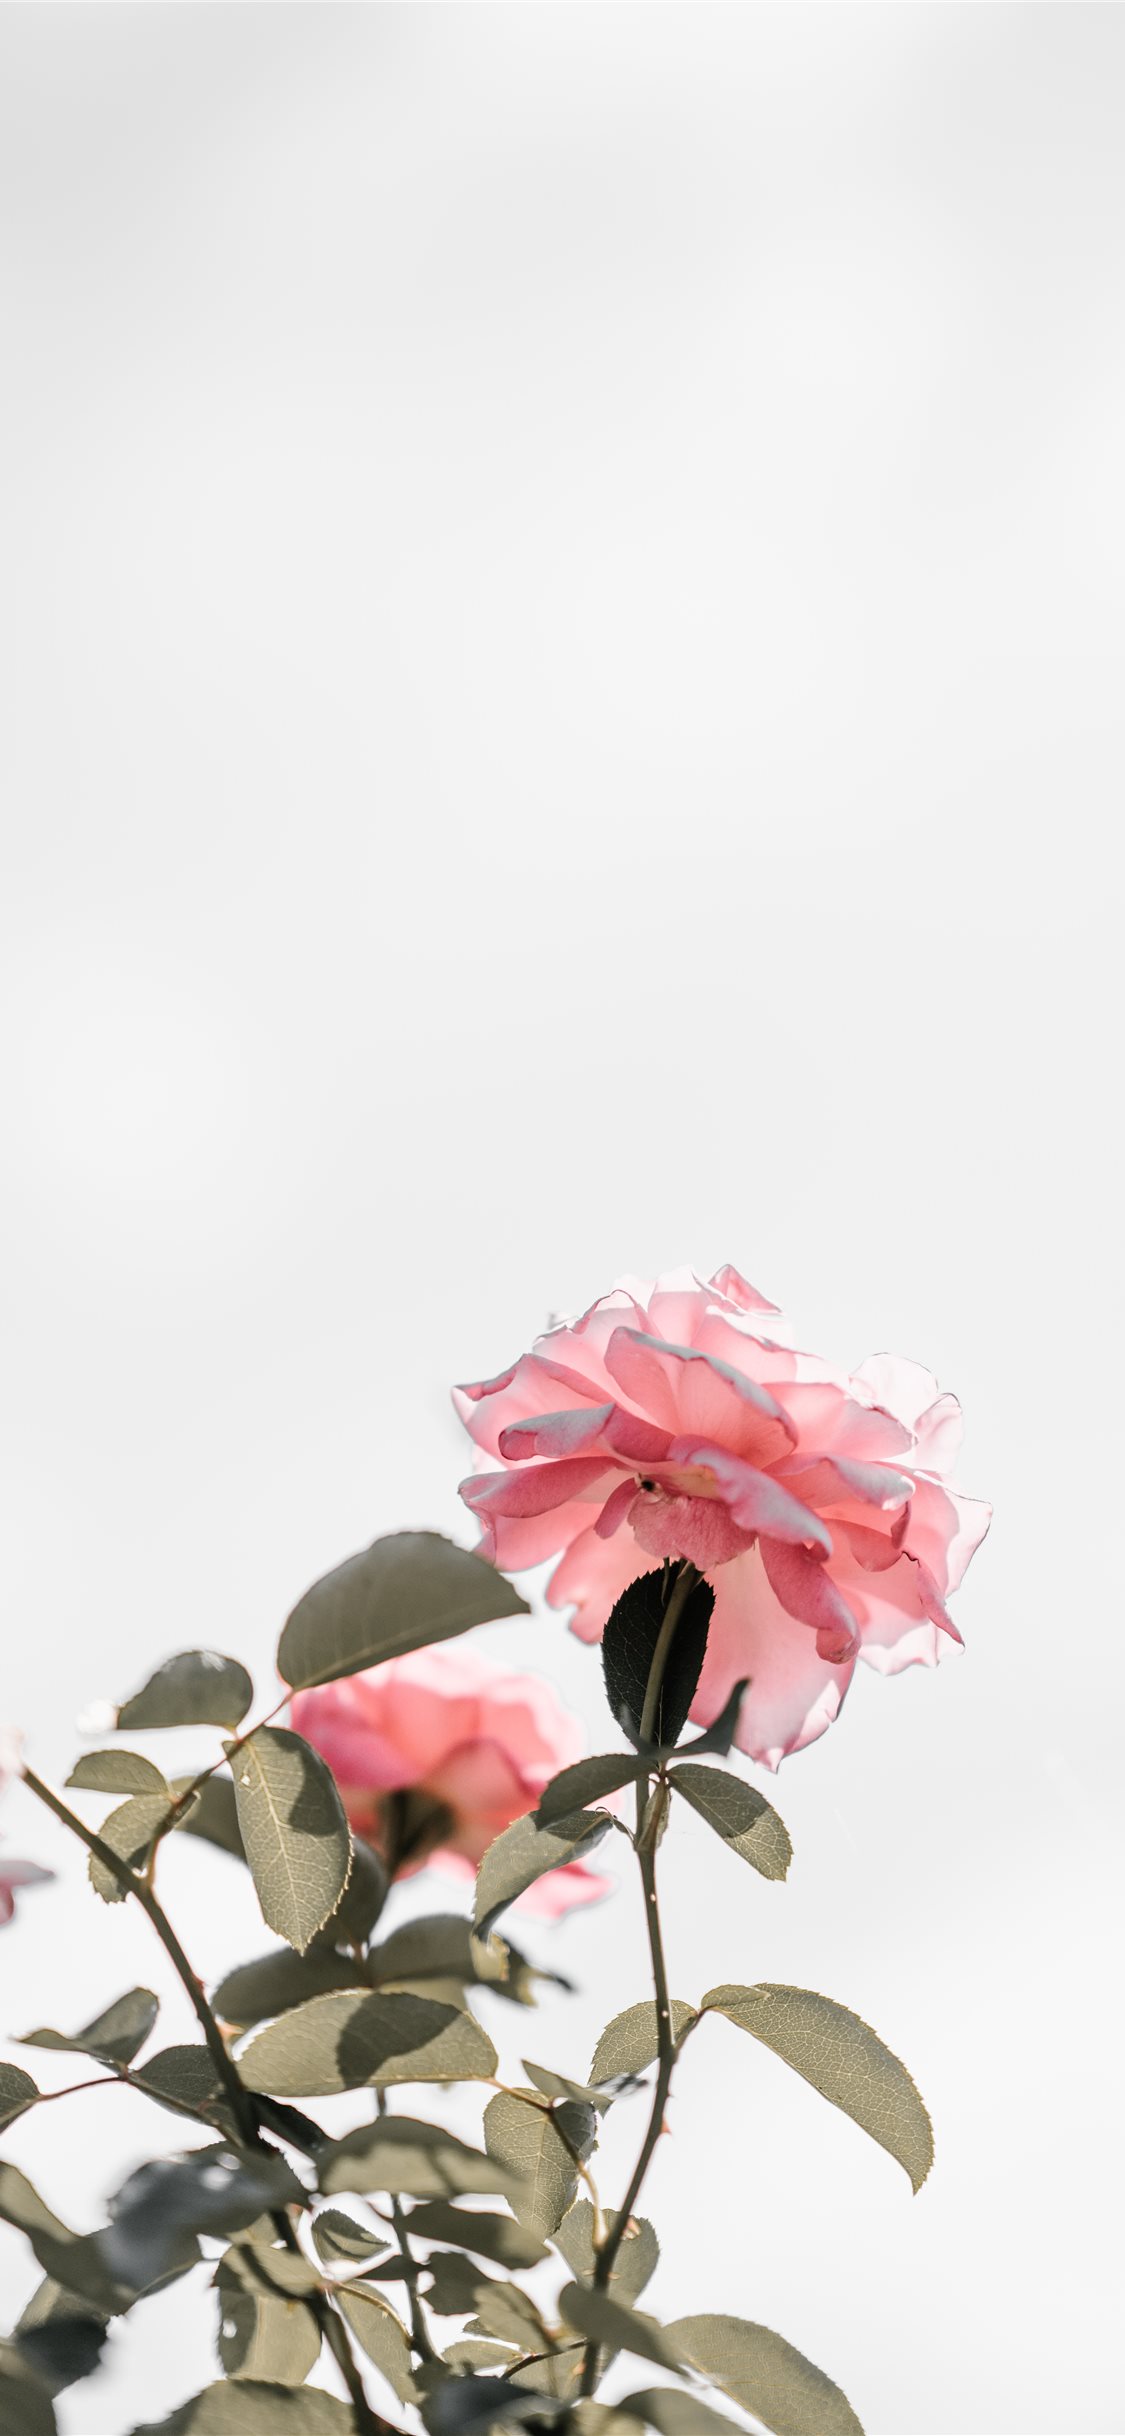 Hình nền Iphone hoa hồng màu hồng với không gian trống tuy đơn giản nhưng lại mang đến vẻ đẹp tinh tế và sang trọng. Đây chắc chắn là một sự lựa chọn đúng đắn để làm hình nền điện thoại của bạn. Hãy tải xuống một cách nhanh chóng và tận hưởng sự thăng hoa của vẻ đẹp di động.